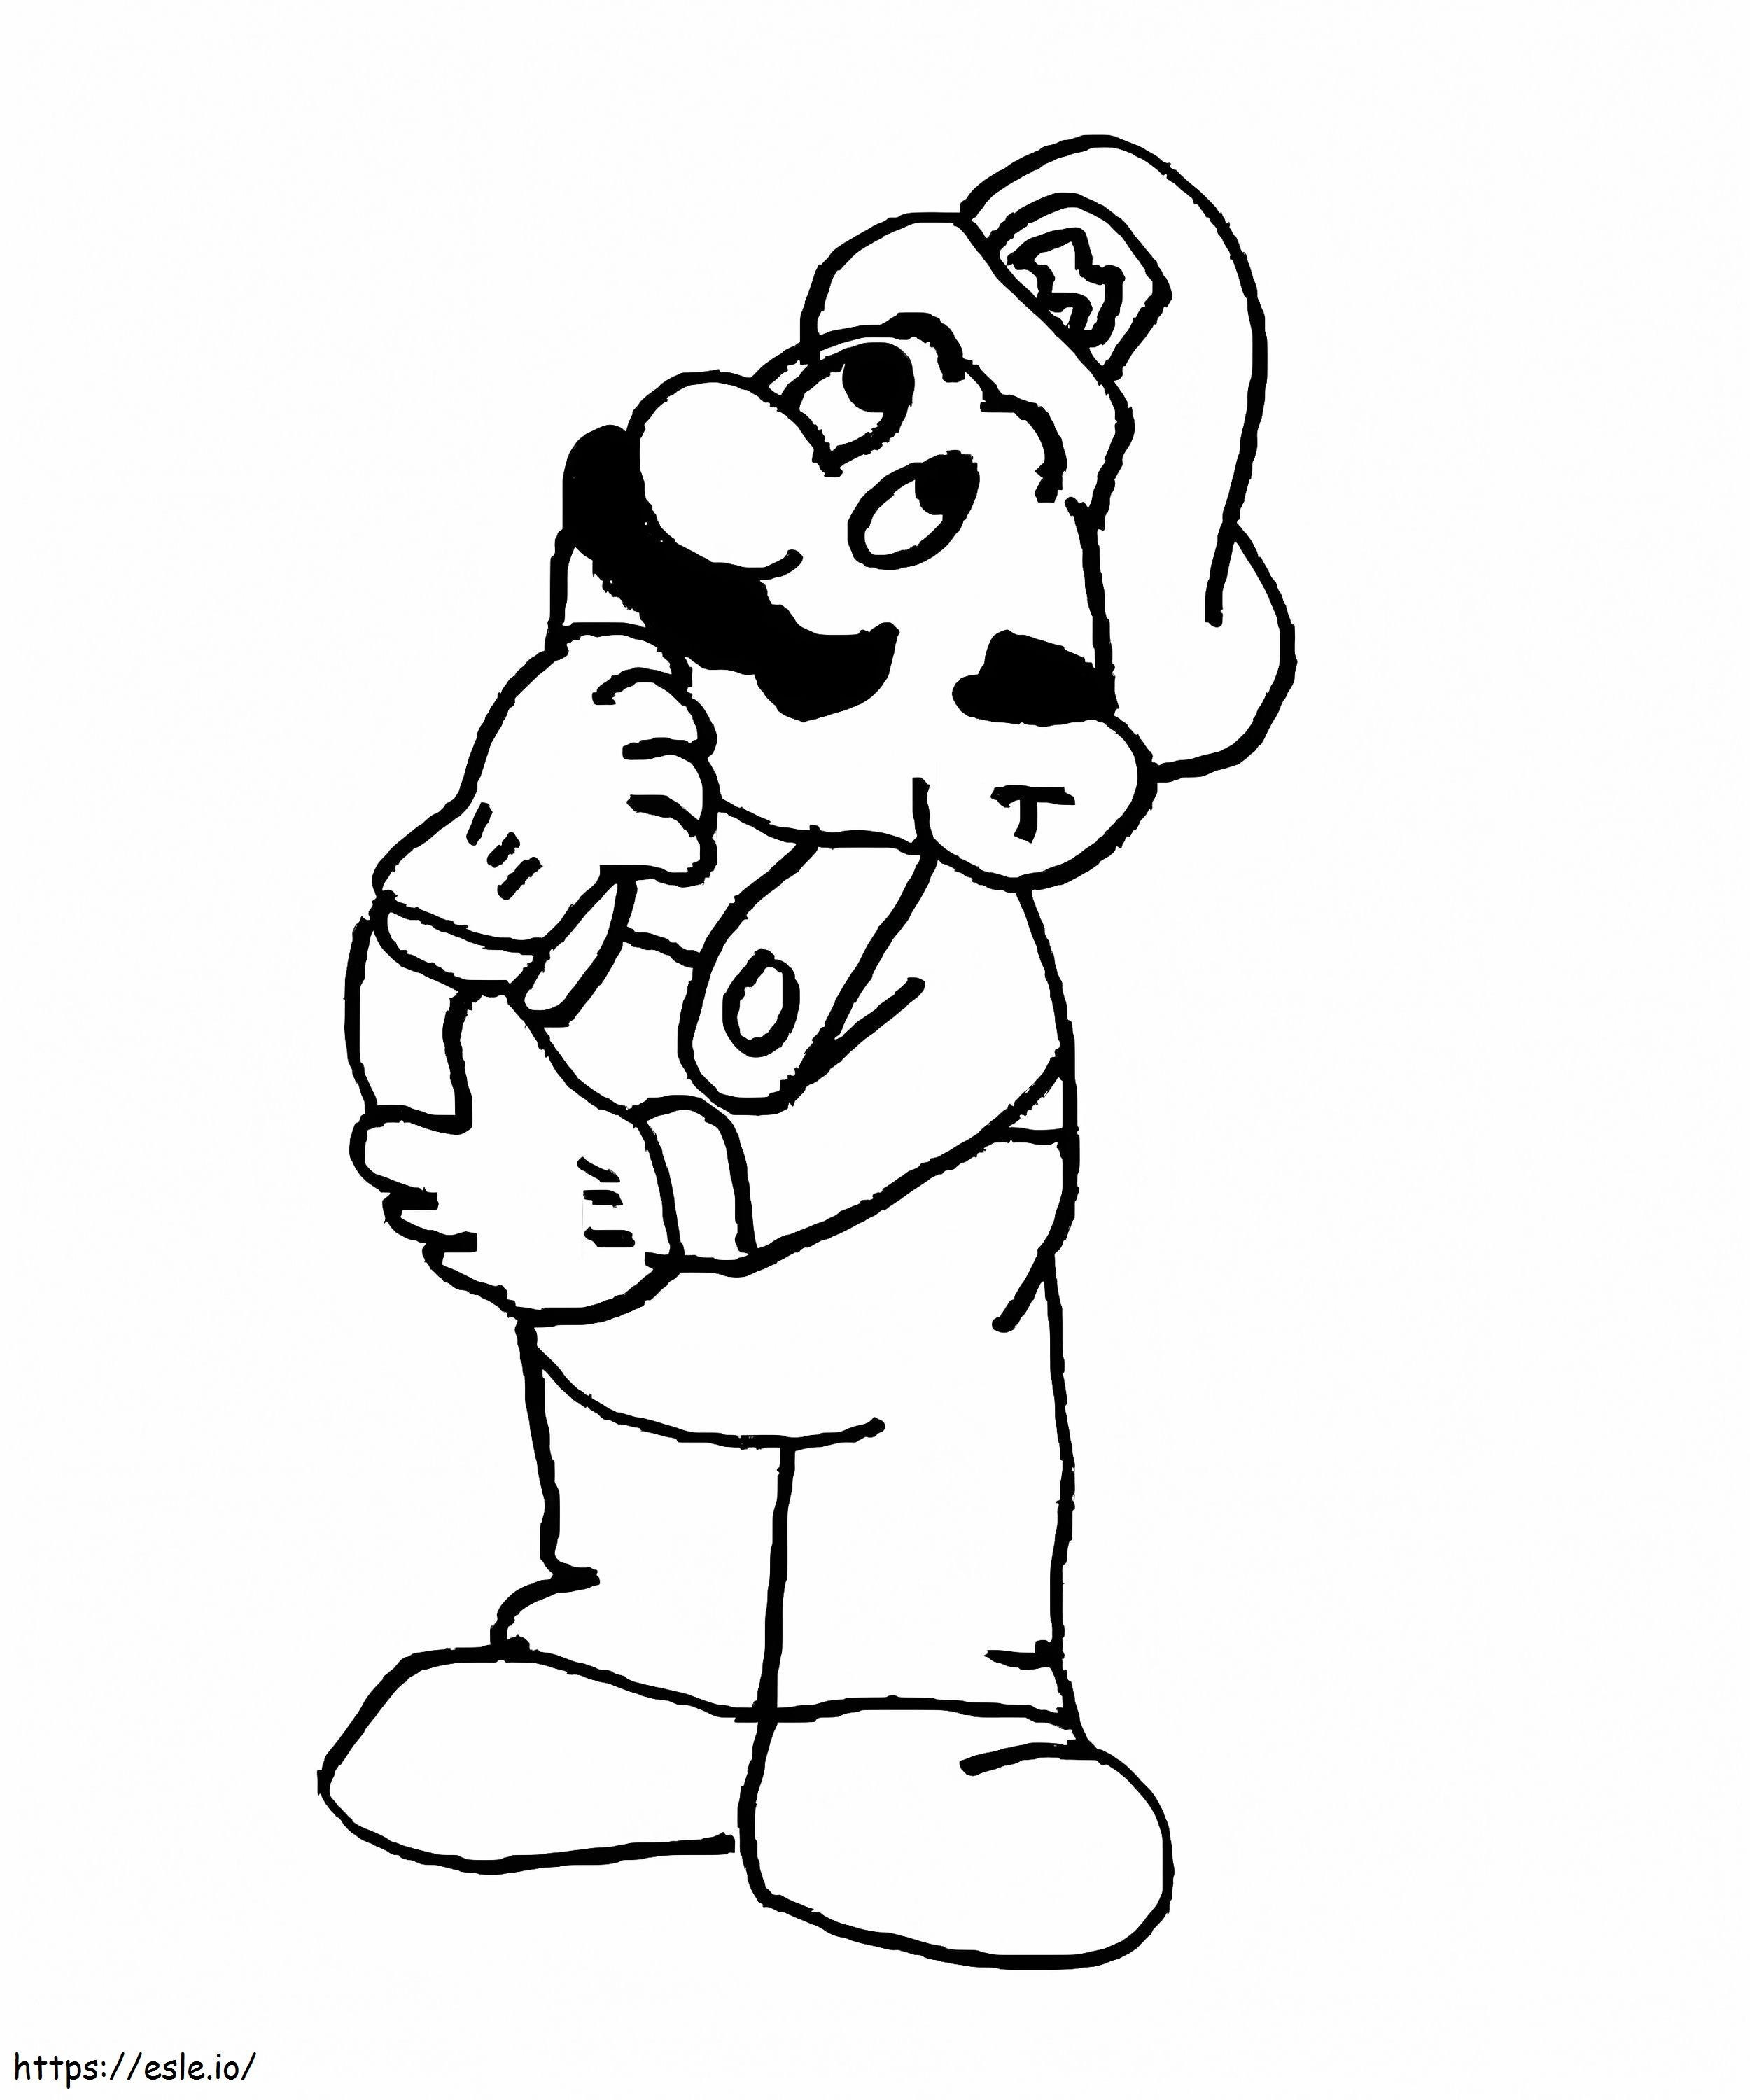 Coloriage Mario pensant à imprimer dessin